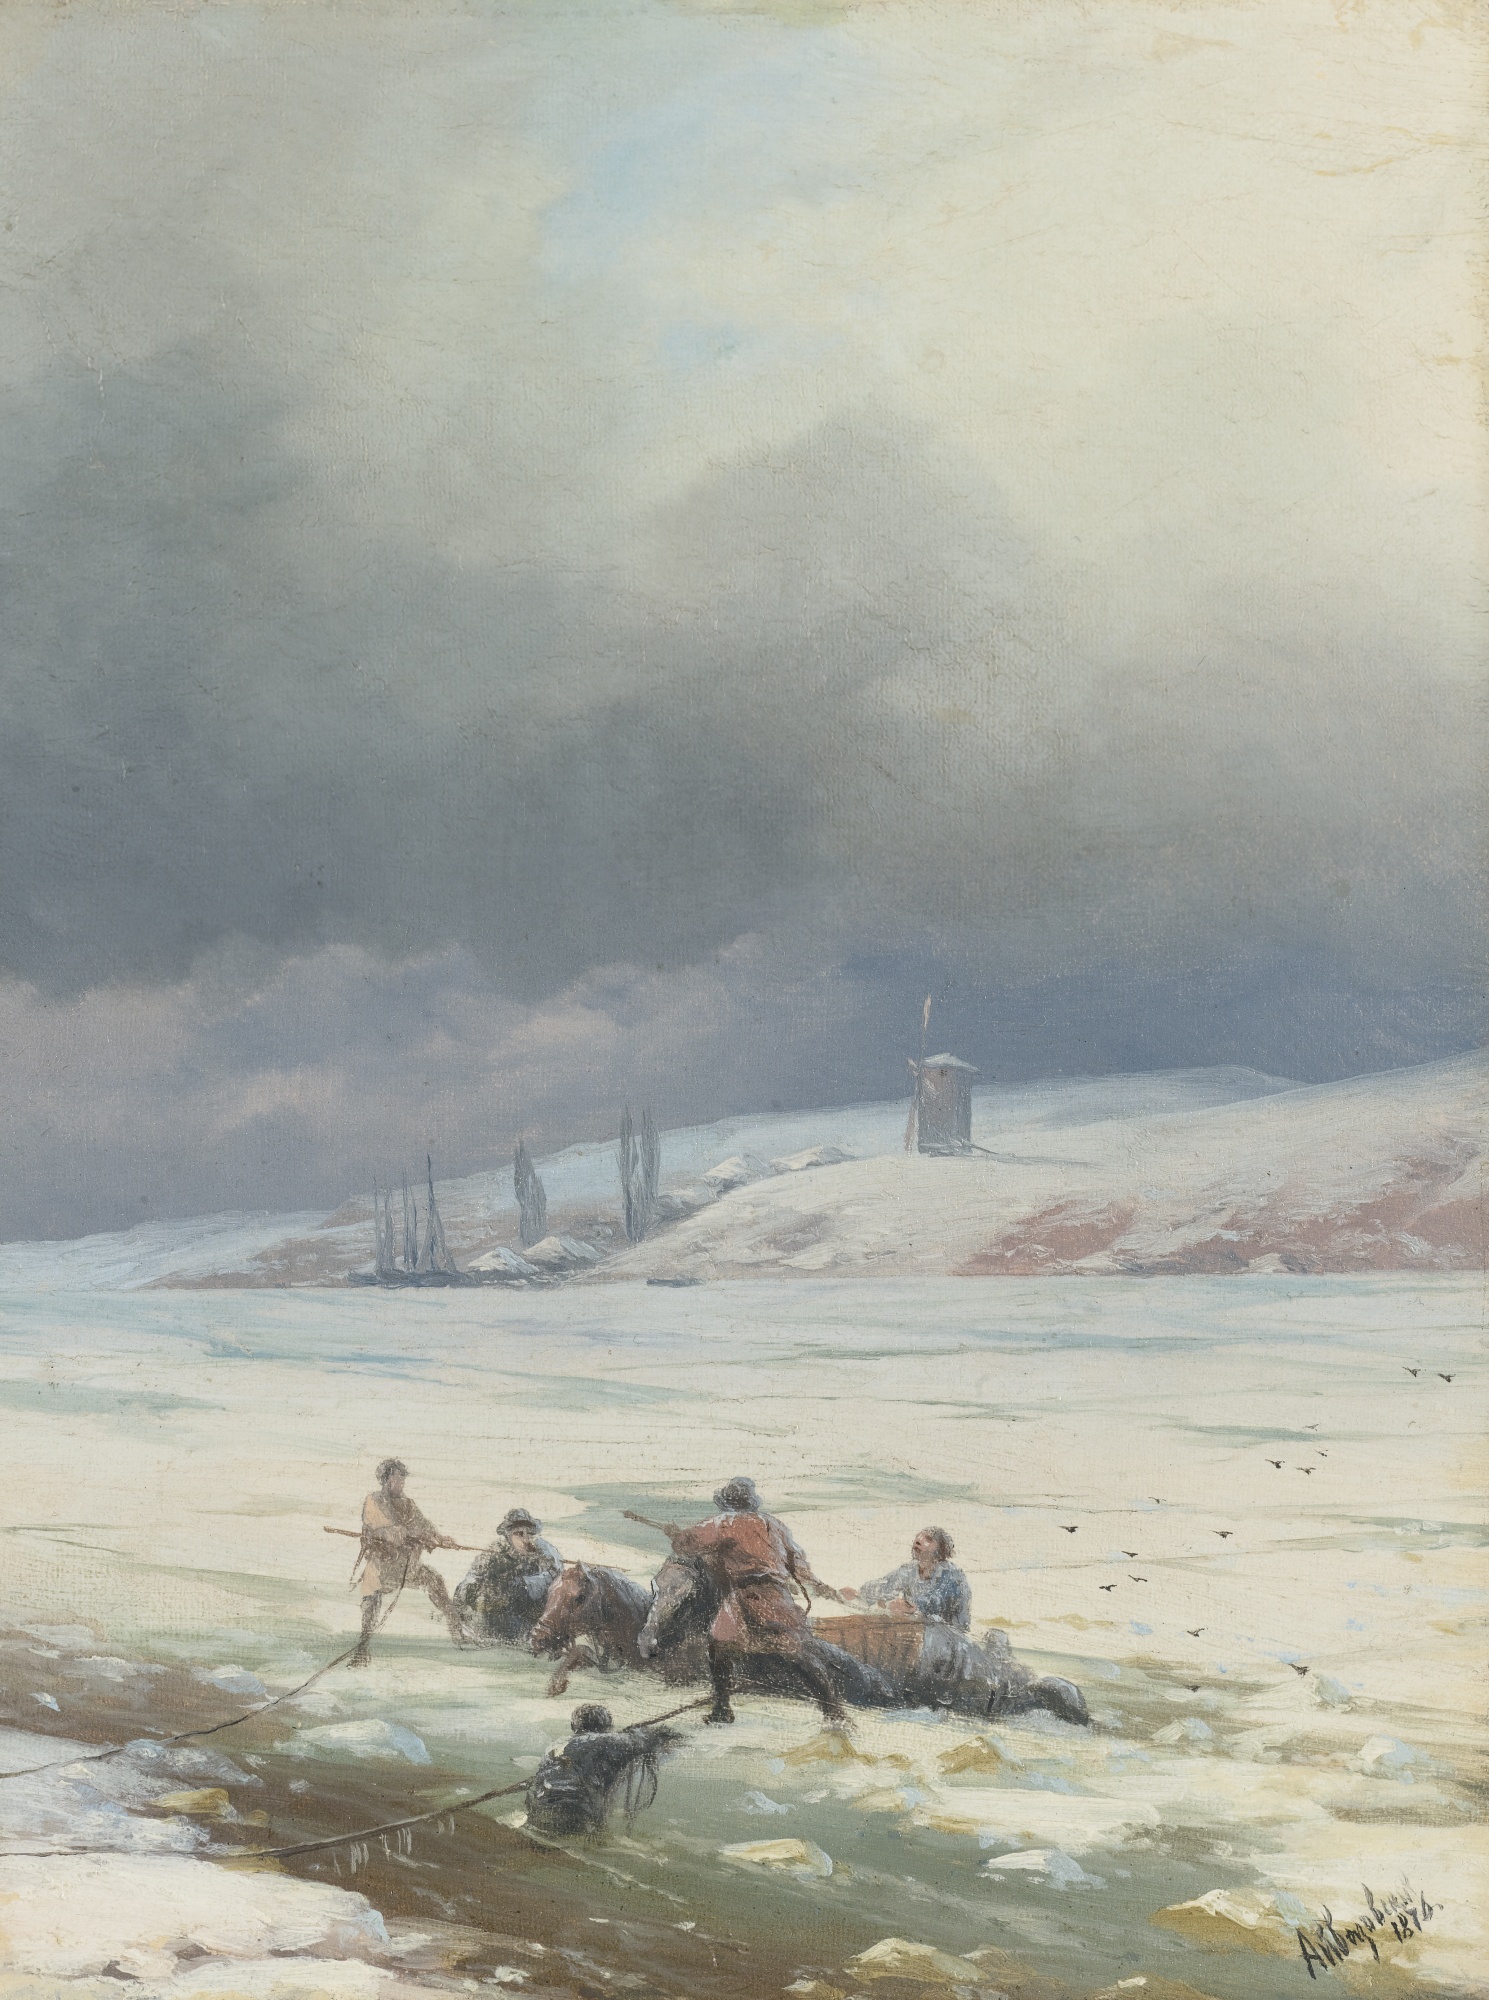 Айвазовский. Вытягивание лошади с повозкой из полыньи. 1876